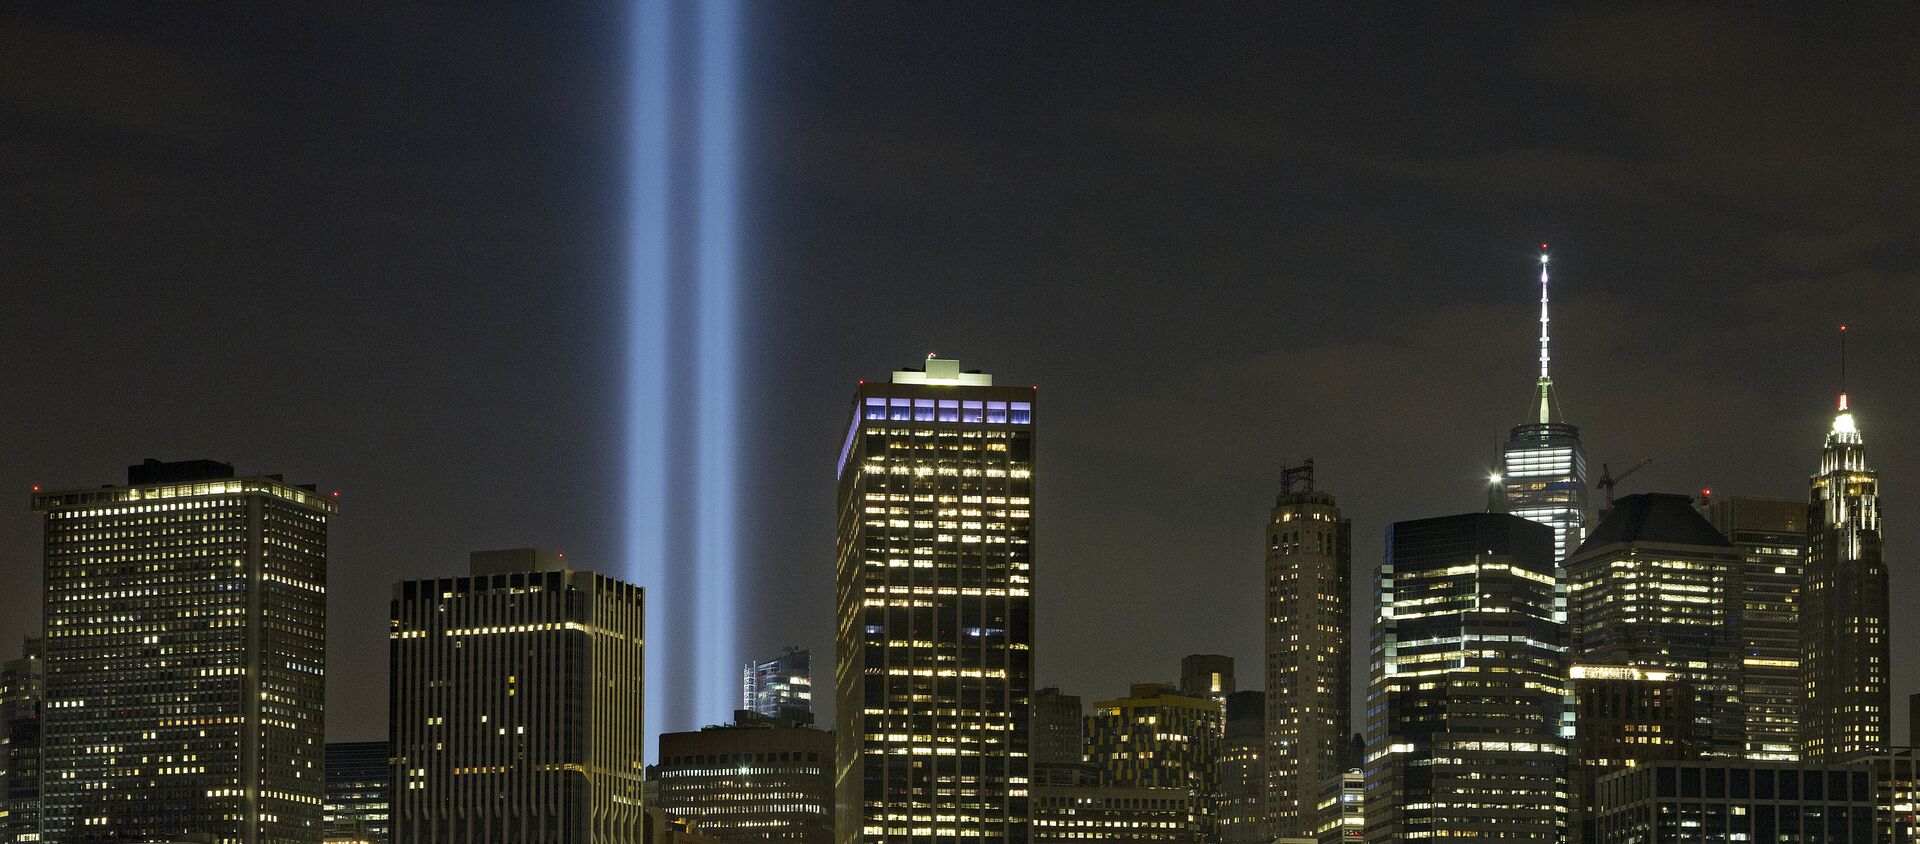 La conmemoración de la tragedia del 11 de septiembre en Nueva York, EEUU - Sputnik Mundo, 1920, 15.01.2019